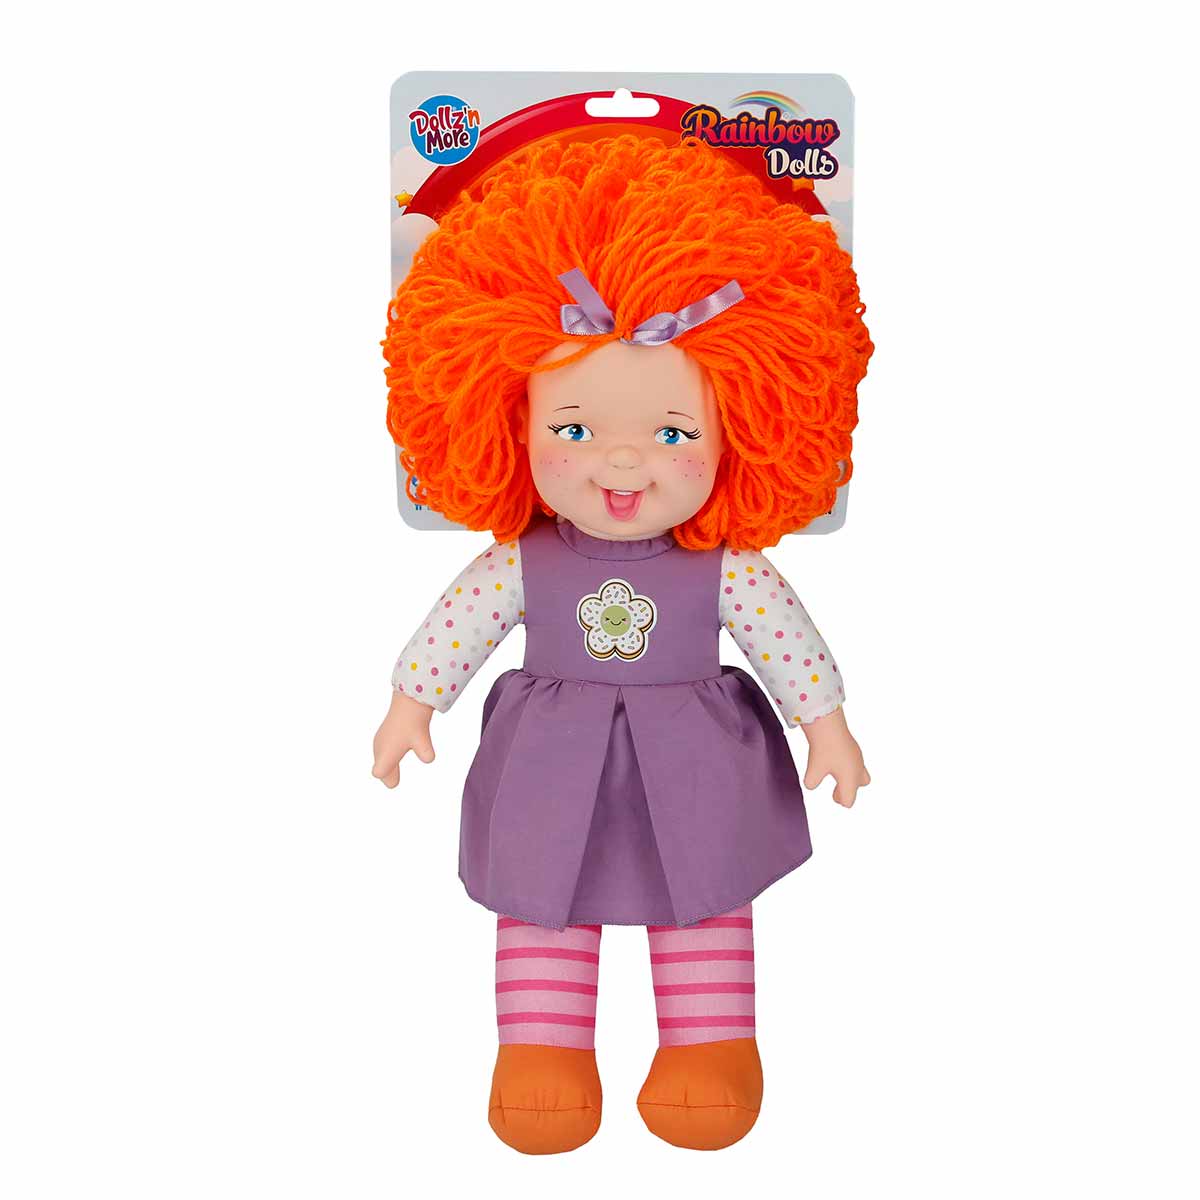 Papusa Rainbow Dolls, Dollzn More, cu par portocaliu, 45 cm Dollz n More